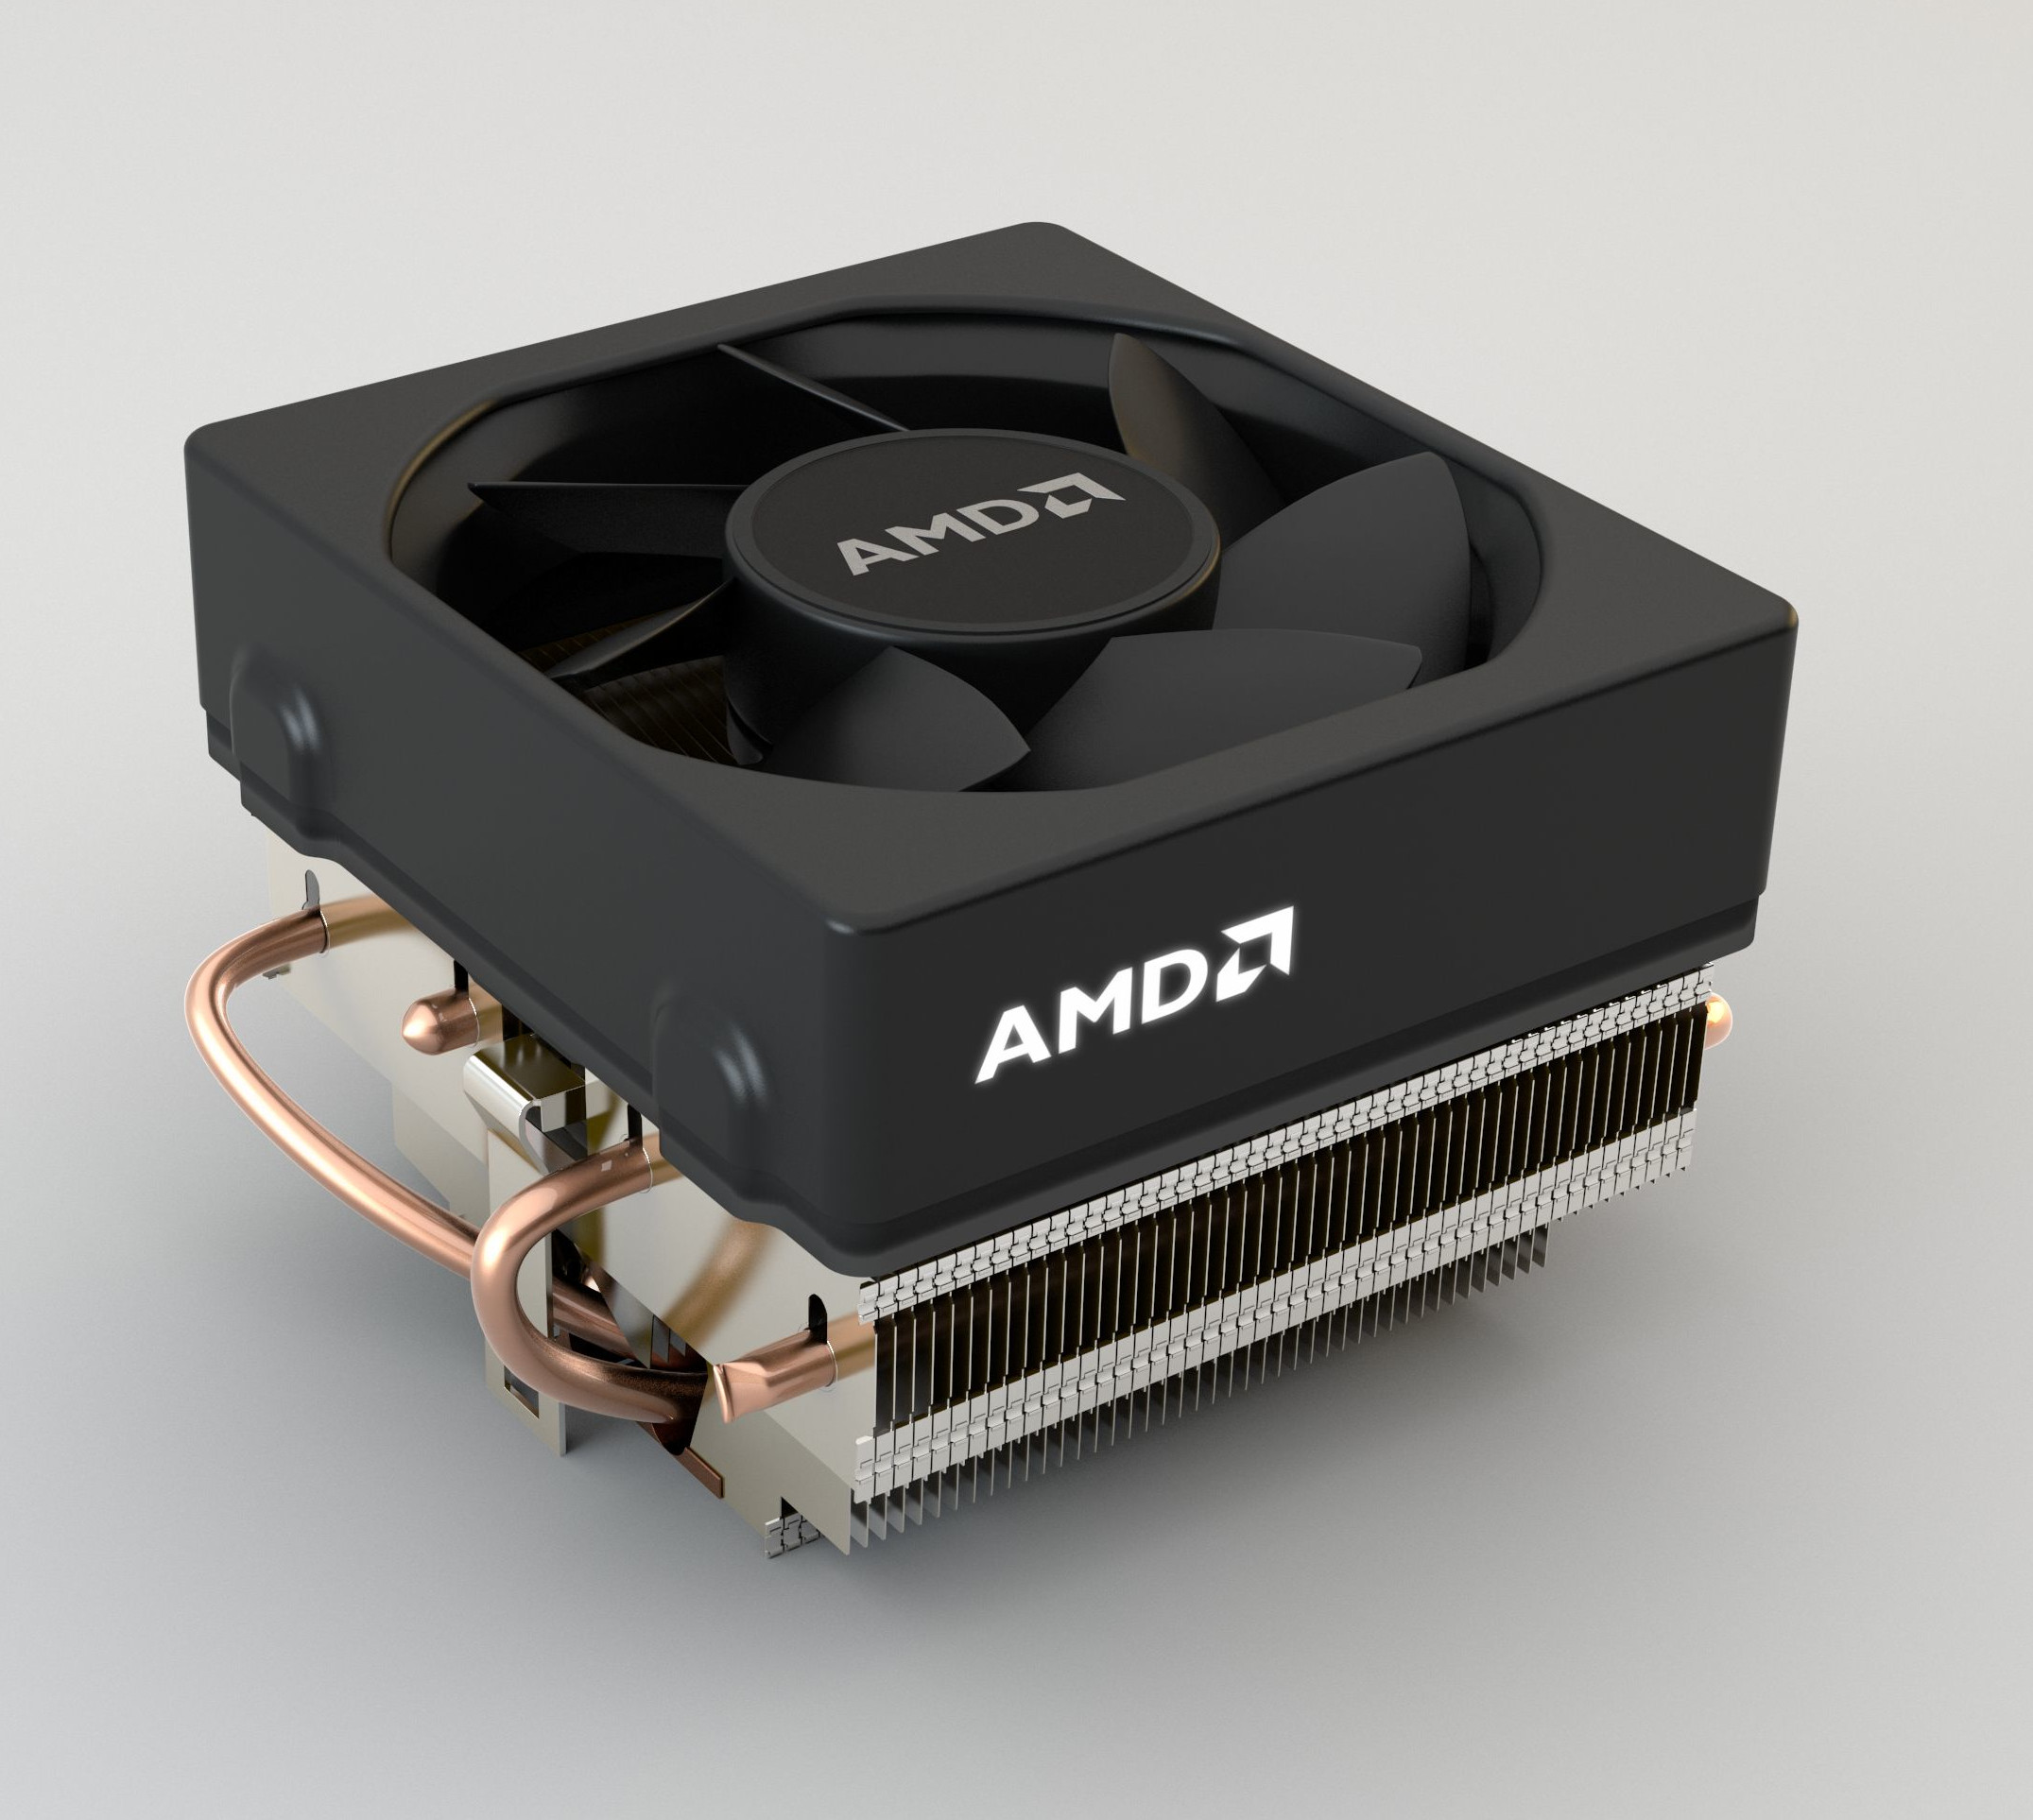 Immagine pubblicata in relazione al seguente contenuto: AMD lancia nuovi cooler reference abbinati a nuovi chip APU e CPU | Nome immagine: news23747_AMD-Cooler-Wraith_1.jpg